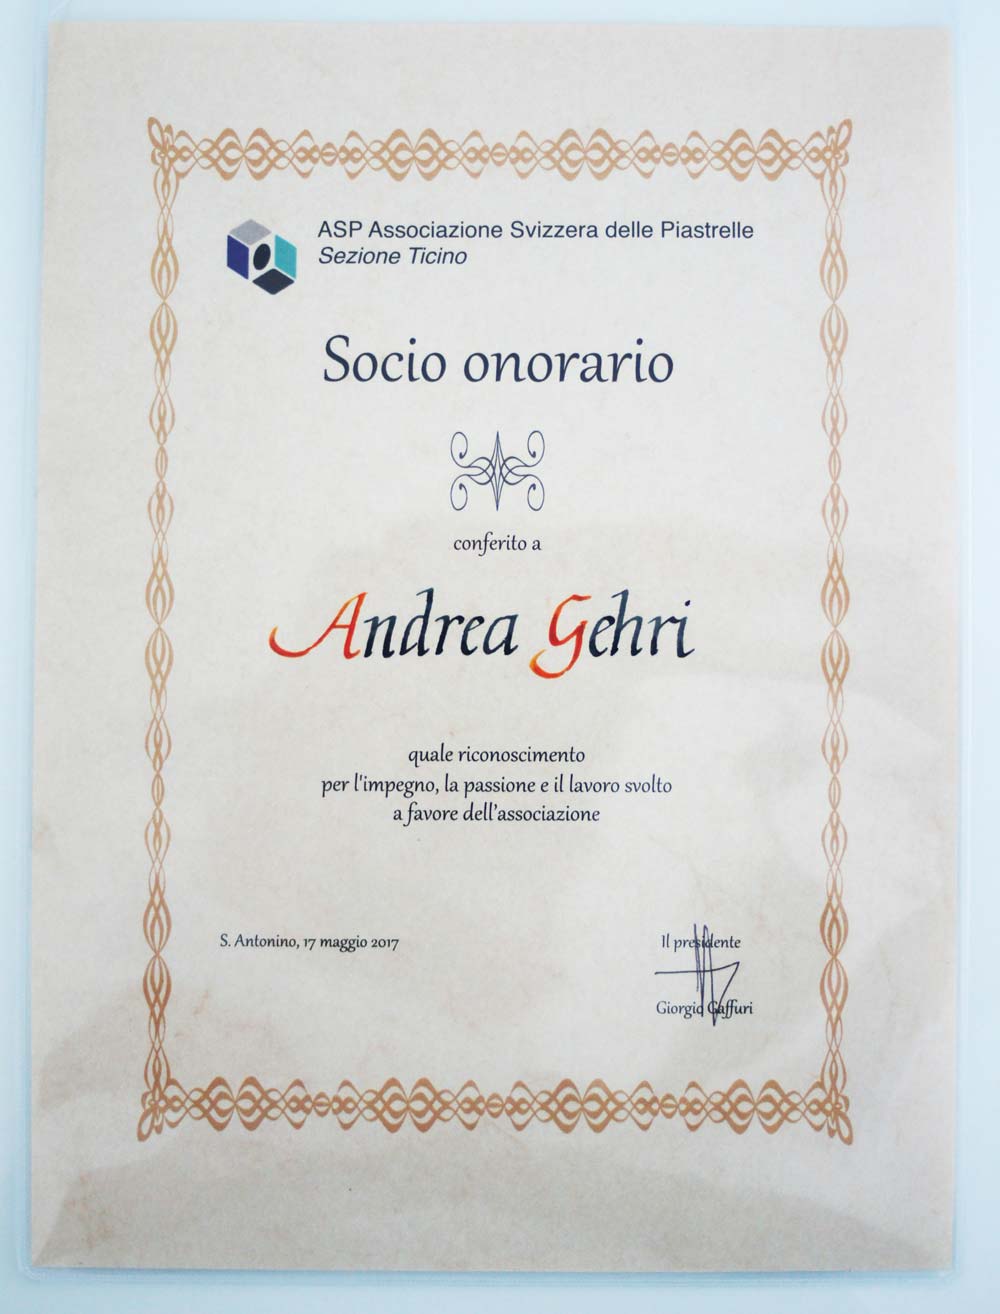 Attestato-socio-onorario-ASP-Ticino.jpg